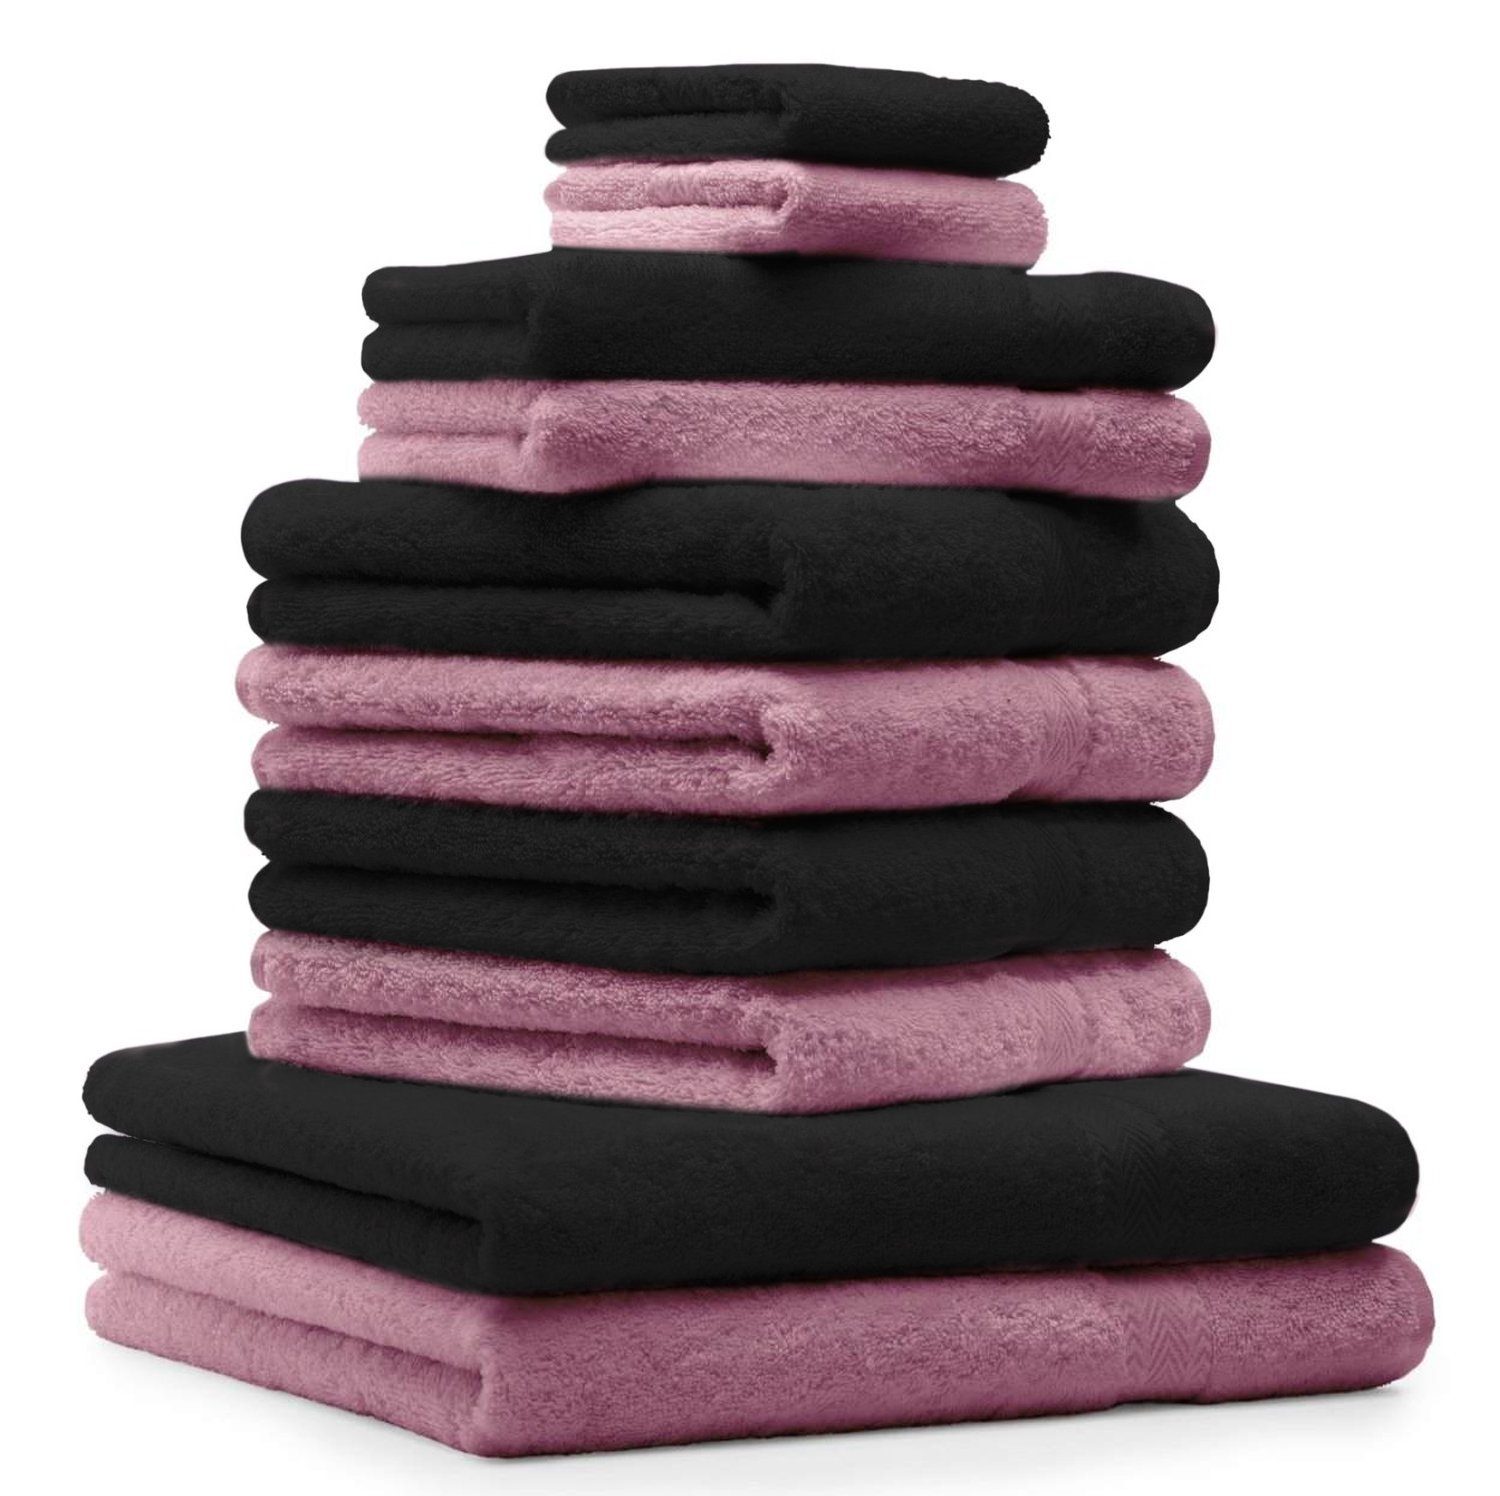 & Set Handtuch-Set (10-tlg) Baumwolle, Altrosa 10-TLG. Betz Schwarz, Premium Handtuch Farbe